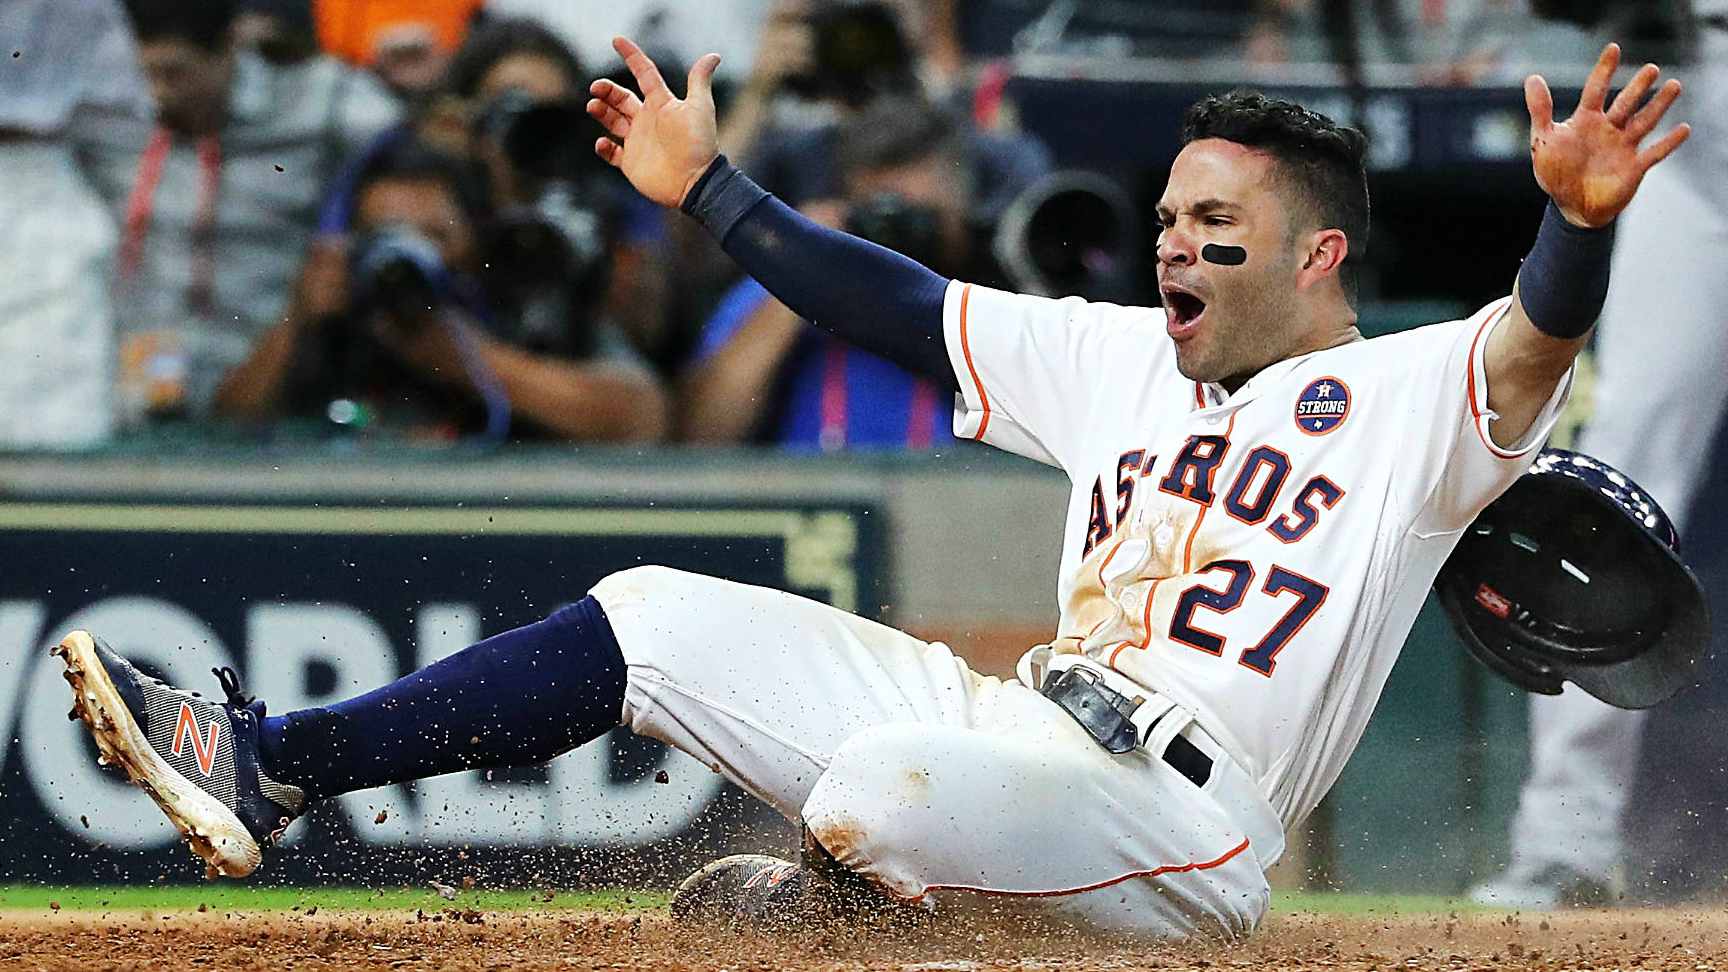 El Sumario - El infielder de los Astros de Houston permanecerá inhabilitado por 30 días para su recuperación